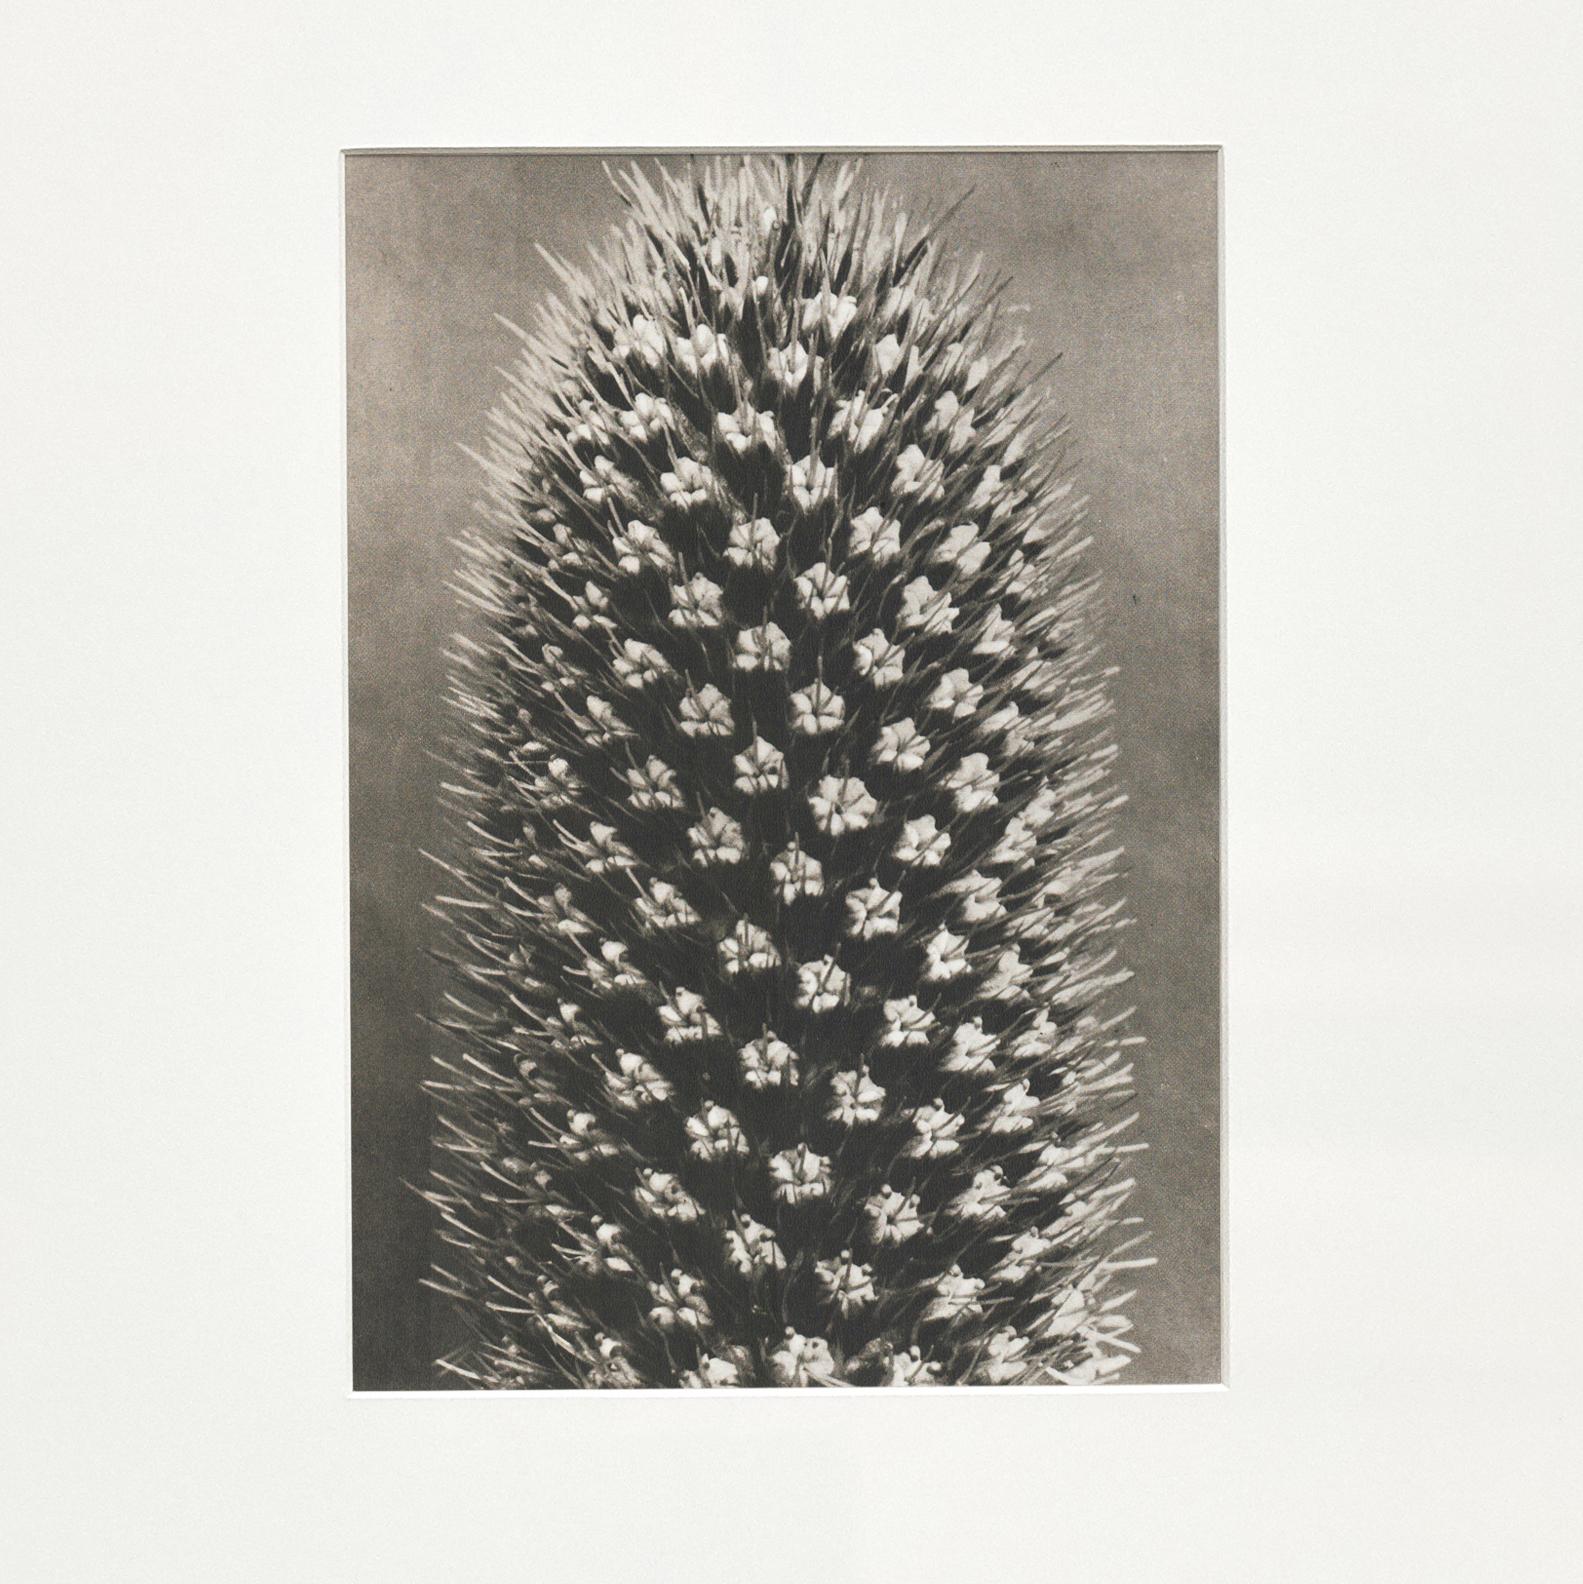 Spanish Karl Blossfeldt Black White Flower Photogravure Botanic Photography, 1942 For Sale